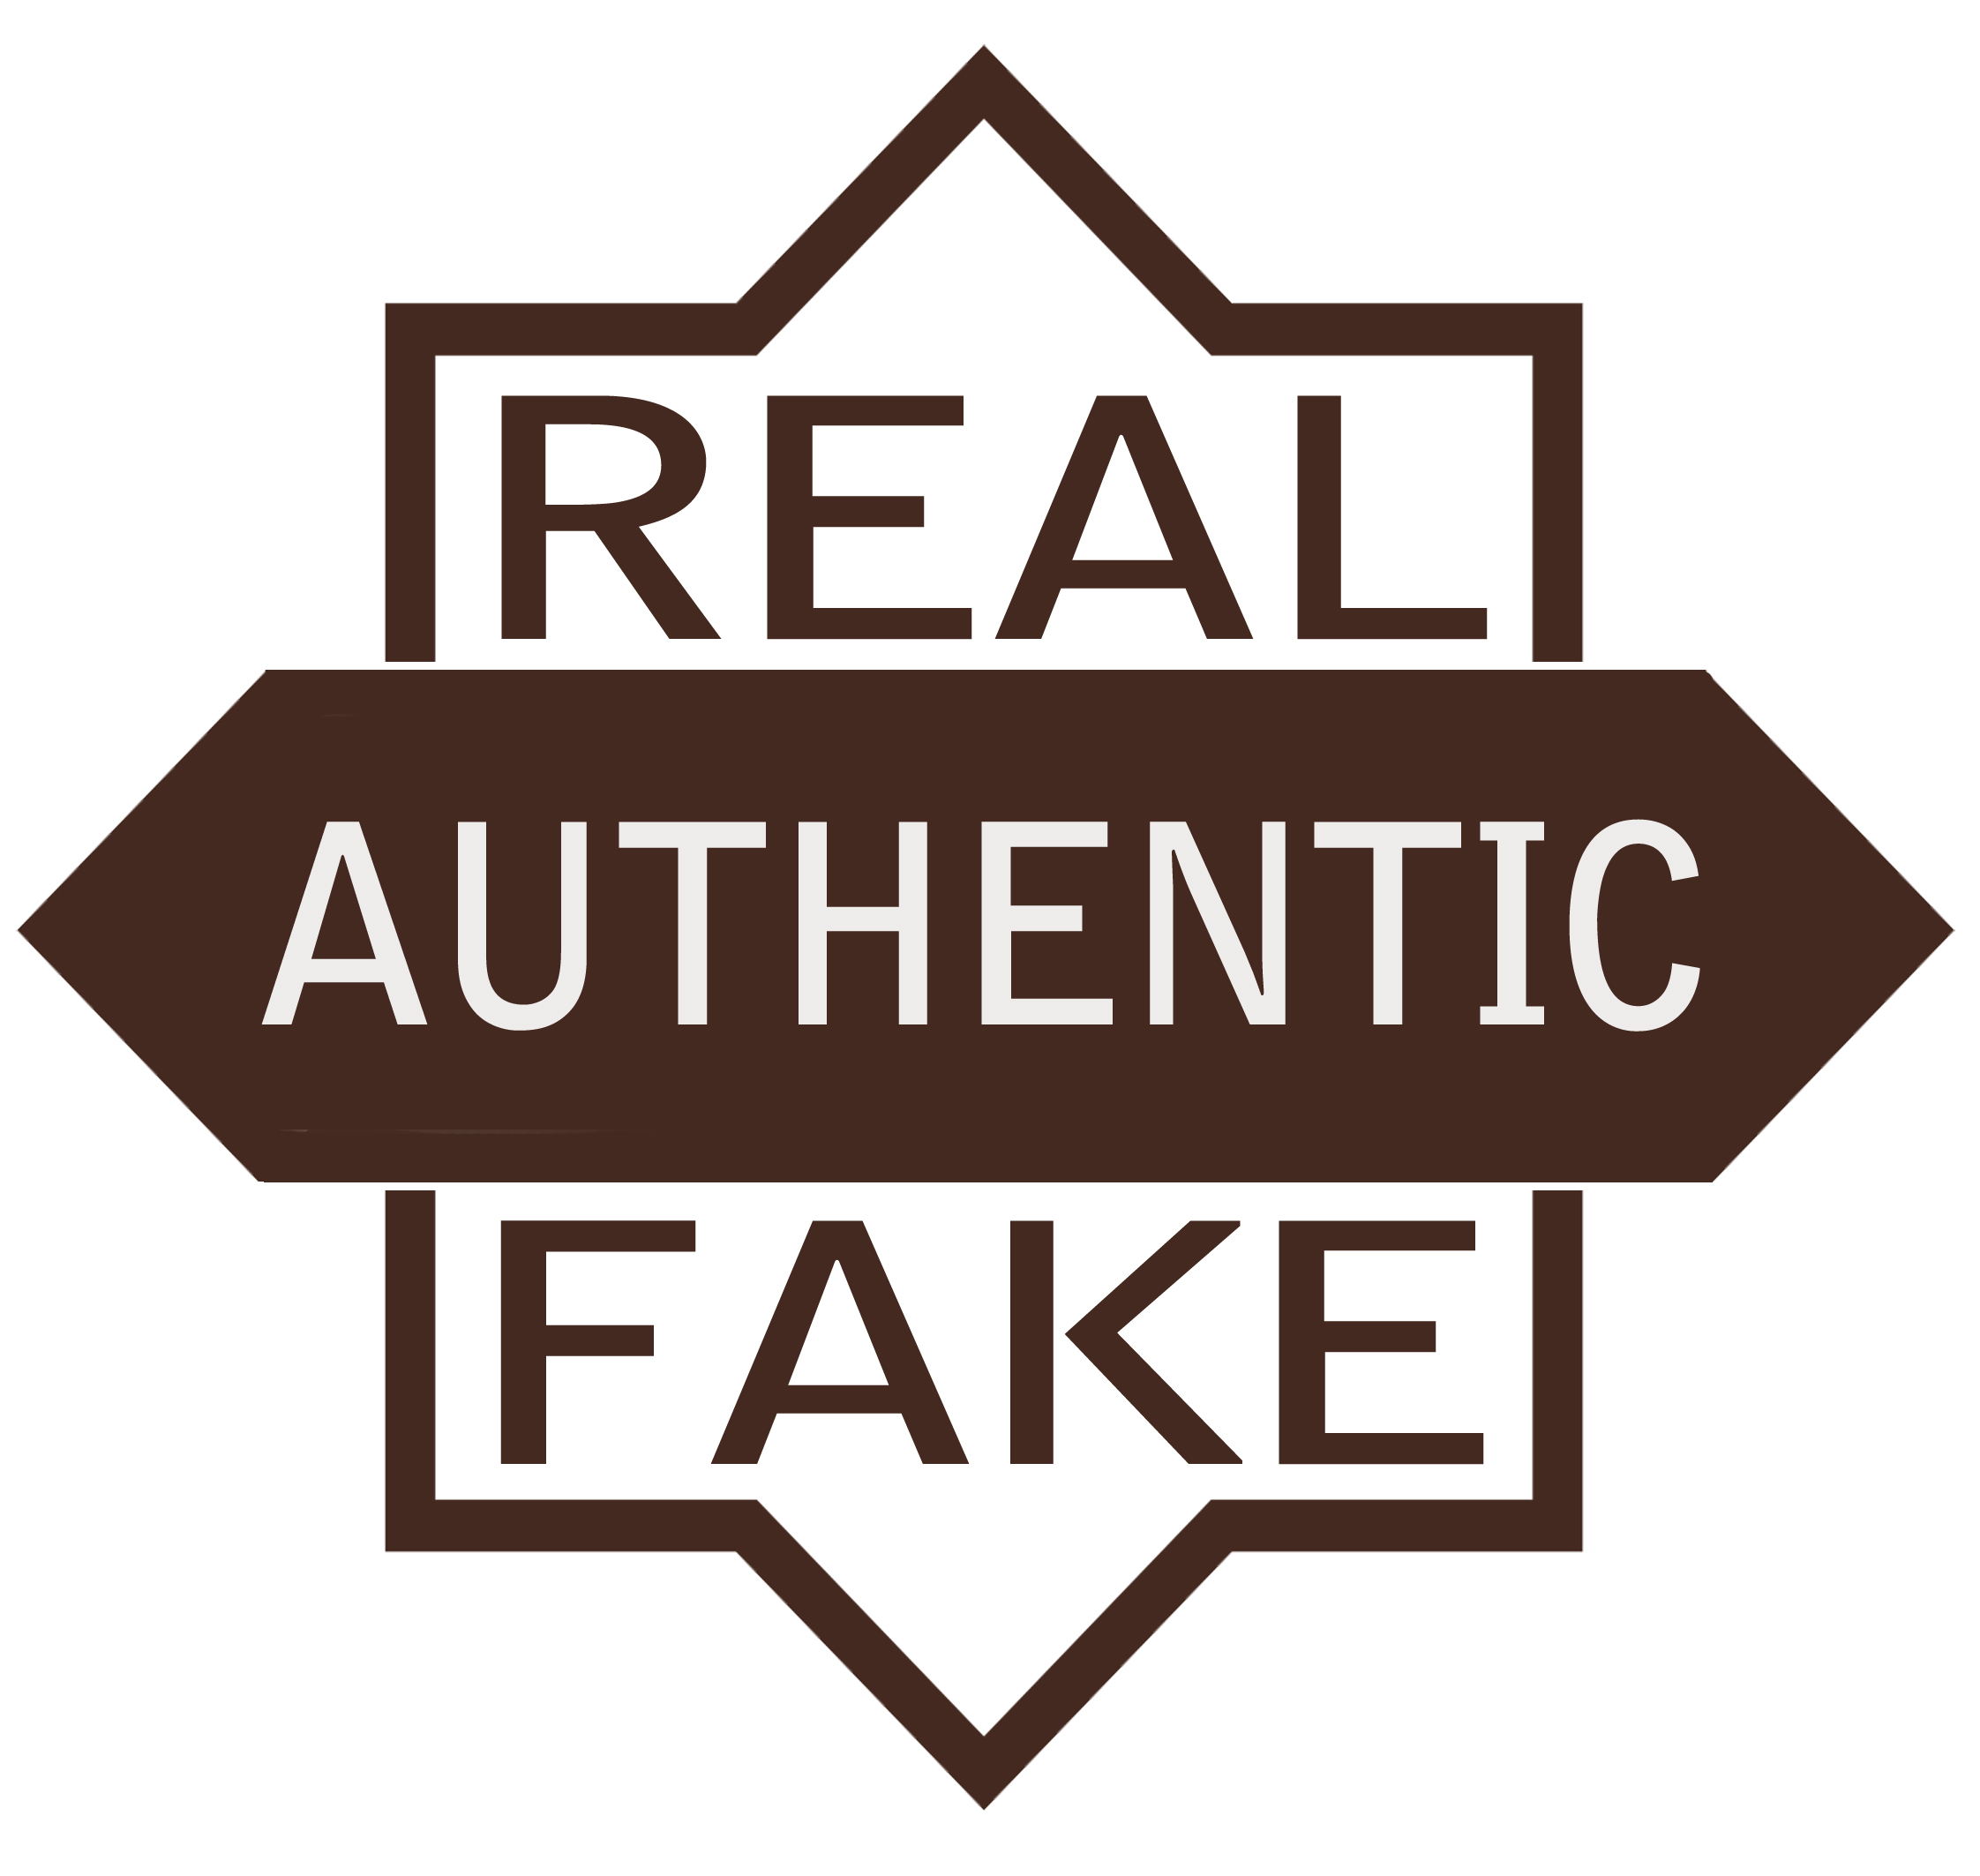  Fake  company Logos 